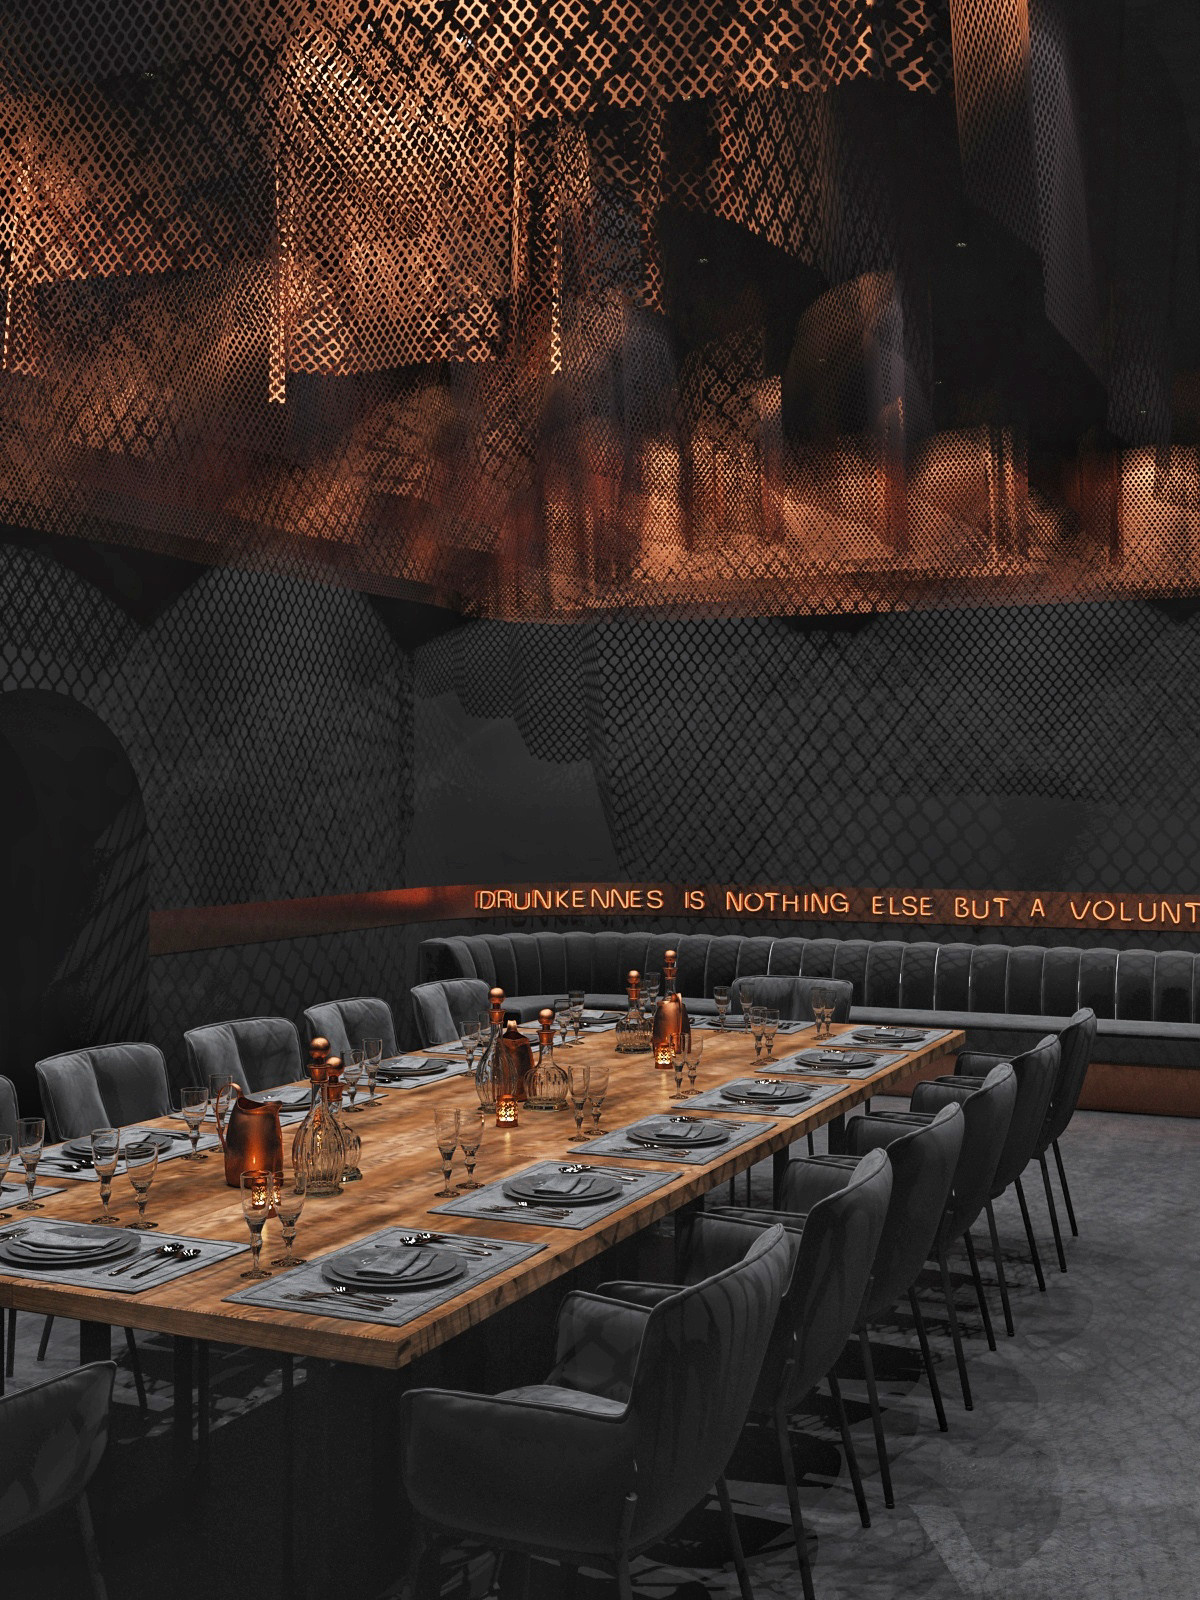 Interior luxury art restaurant copper design interior bar architekture